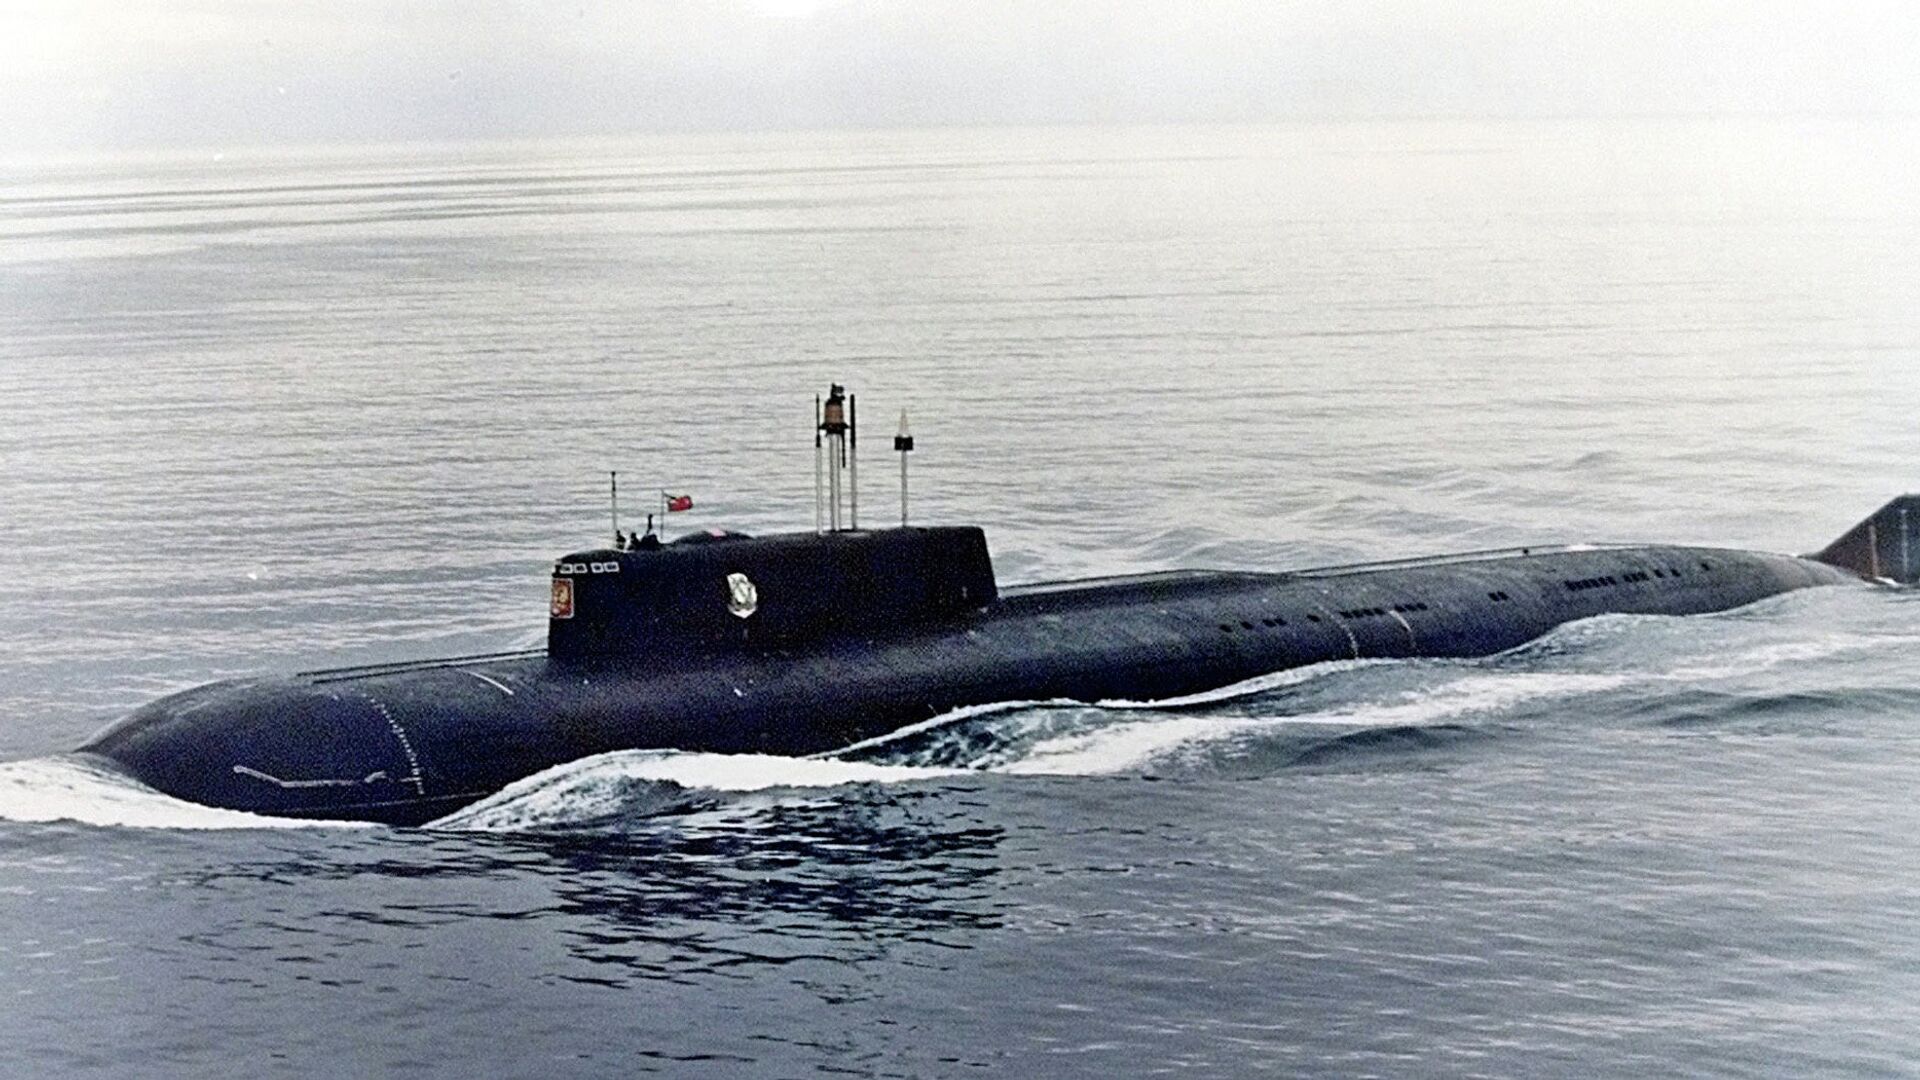 Jedna od najvećih i najsavremenijih ruskih podmornica, Kursk, koja je eksplodirala i potonula tokom vojnih vežbi u avgustu 2000. - Sputnik Srbija, 1920, 22.11.2021